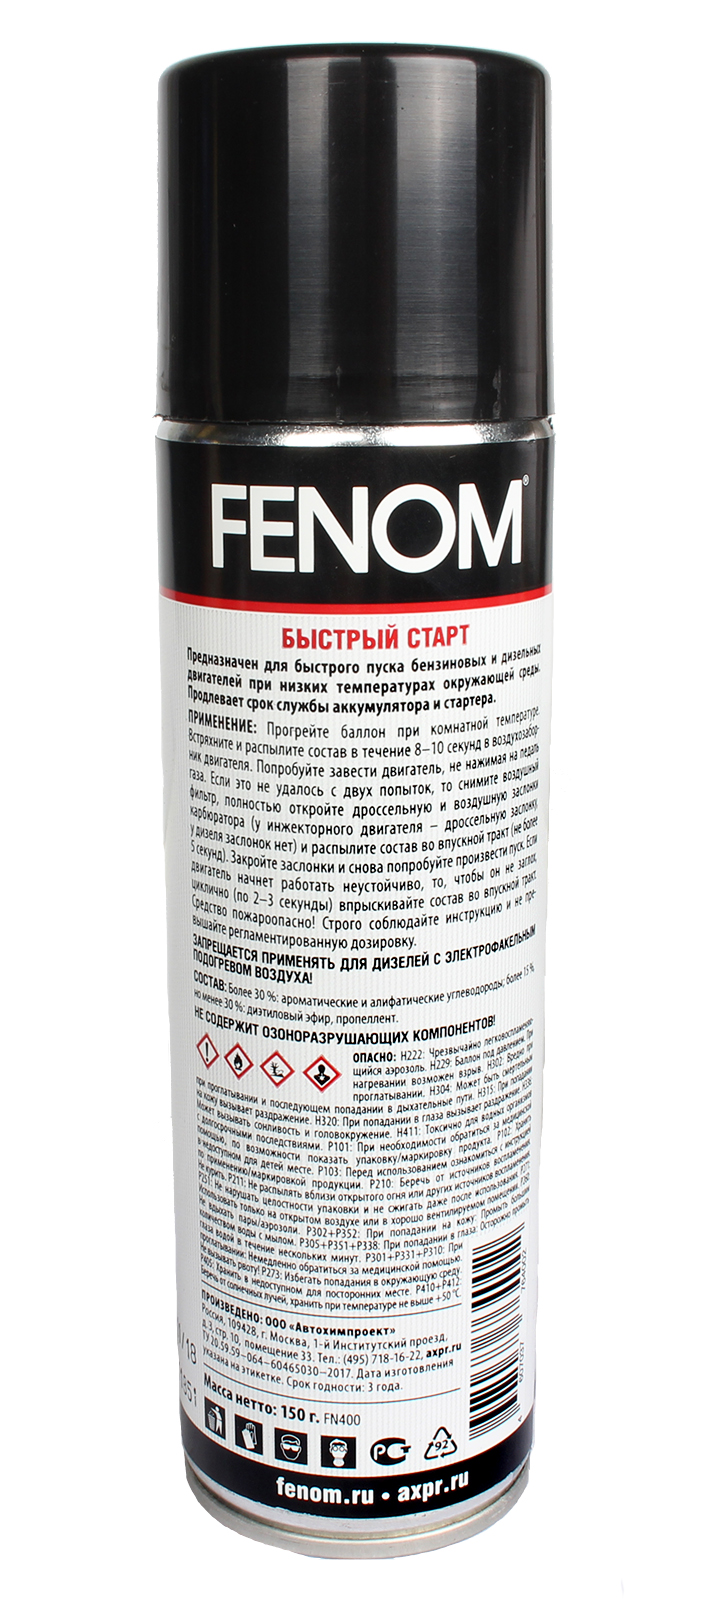 Средство FENOM для быстрого запуска 335мл фотография №2